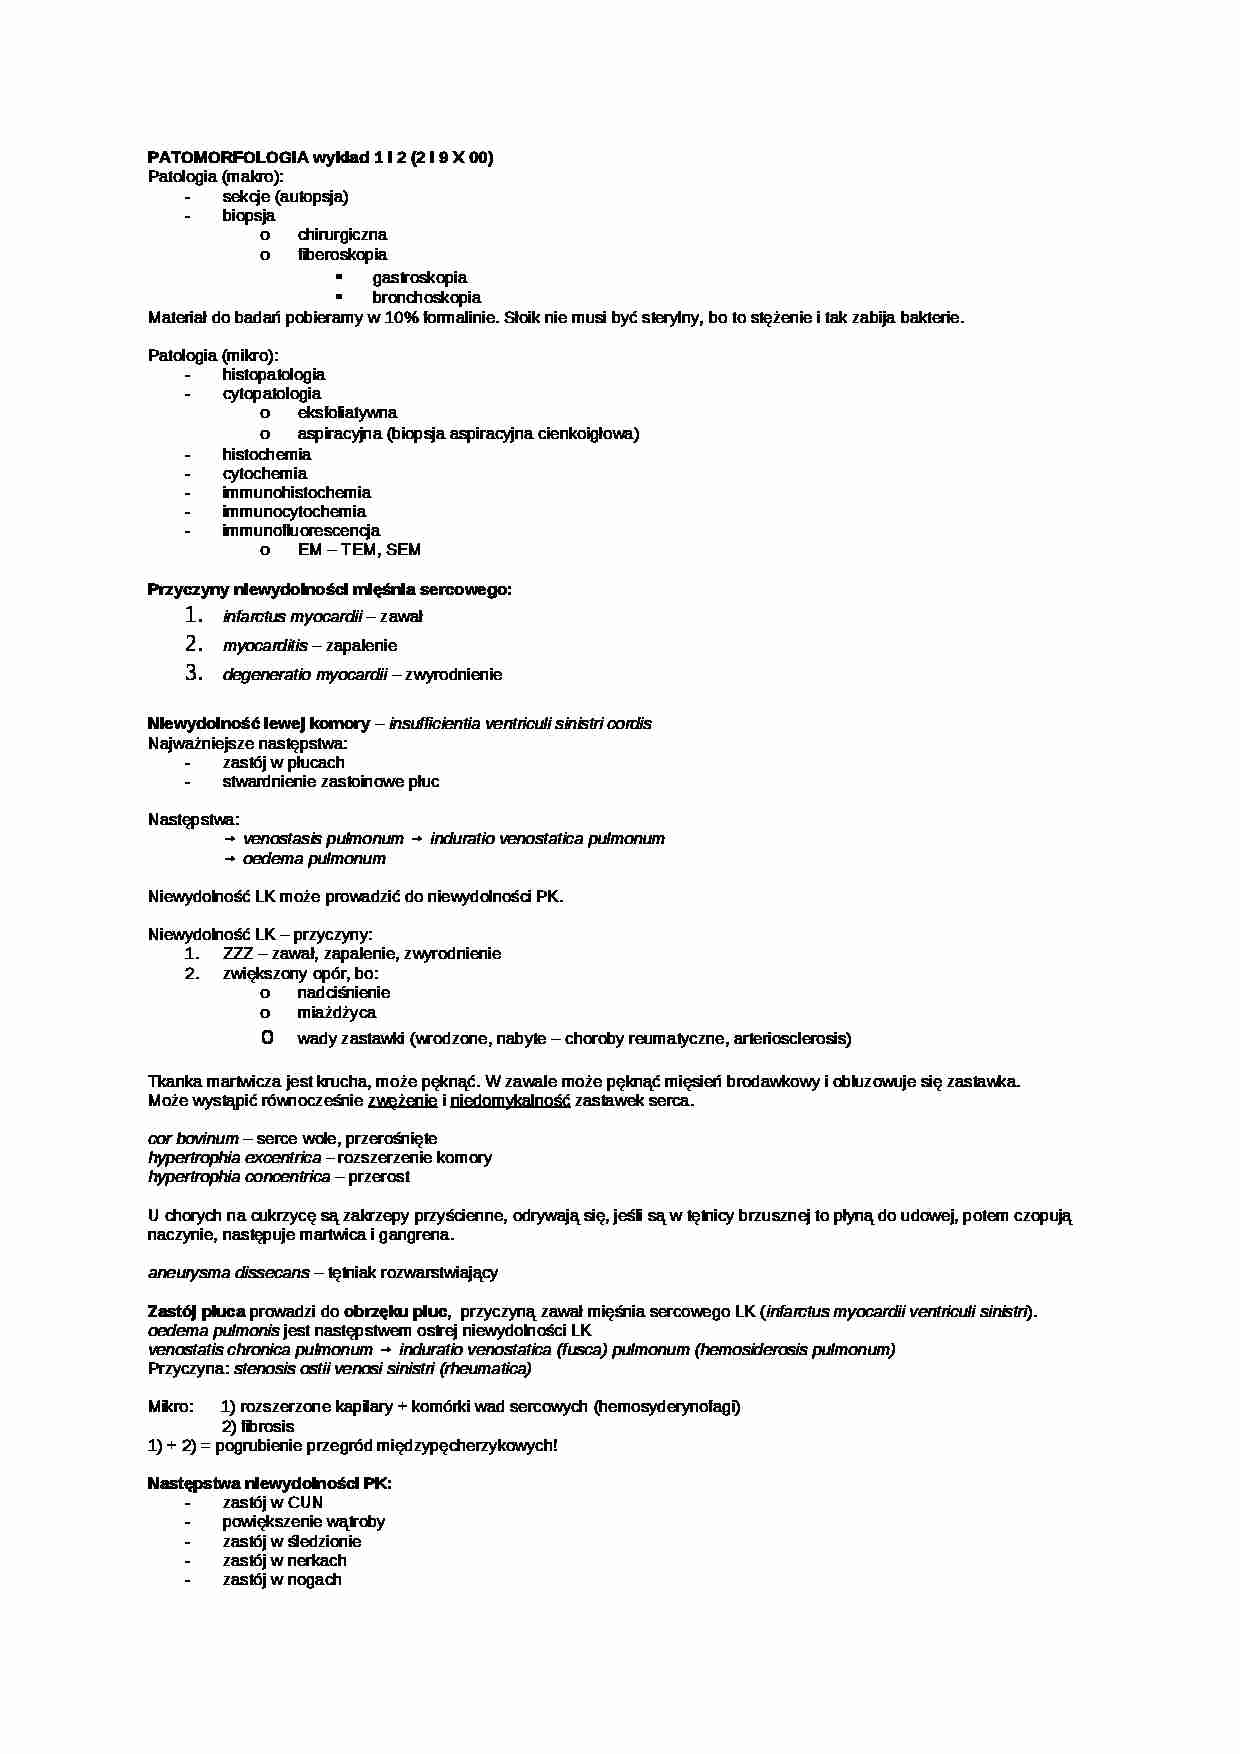 Patomorfologia - definicja i podział - strona 1